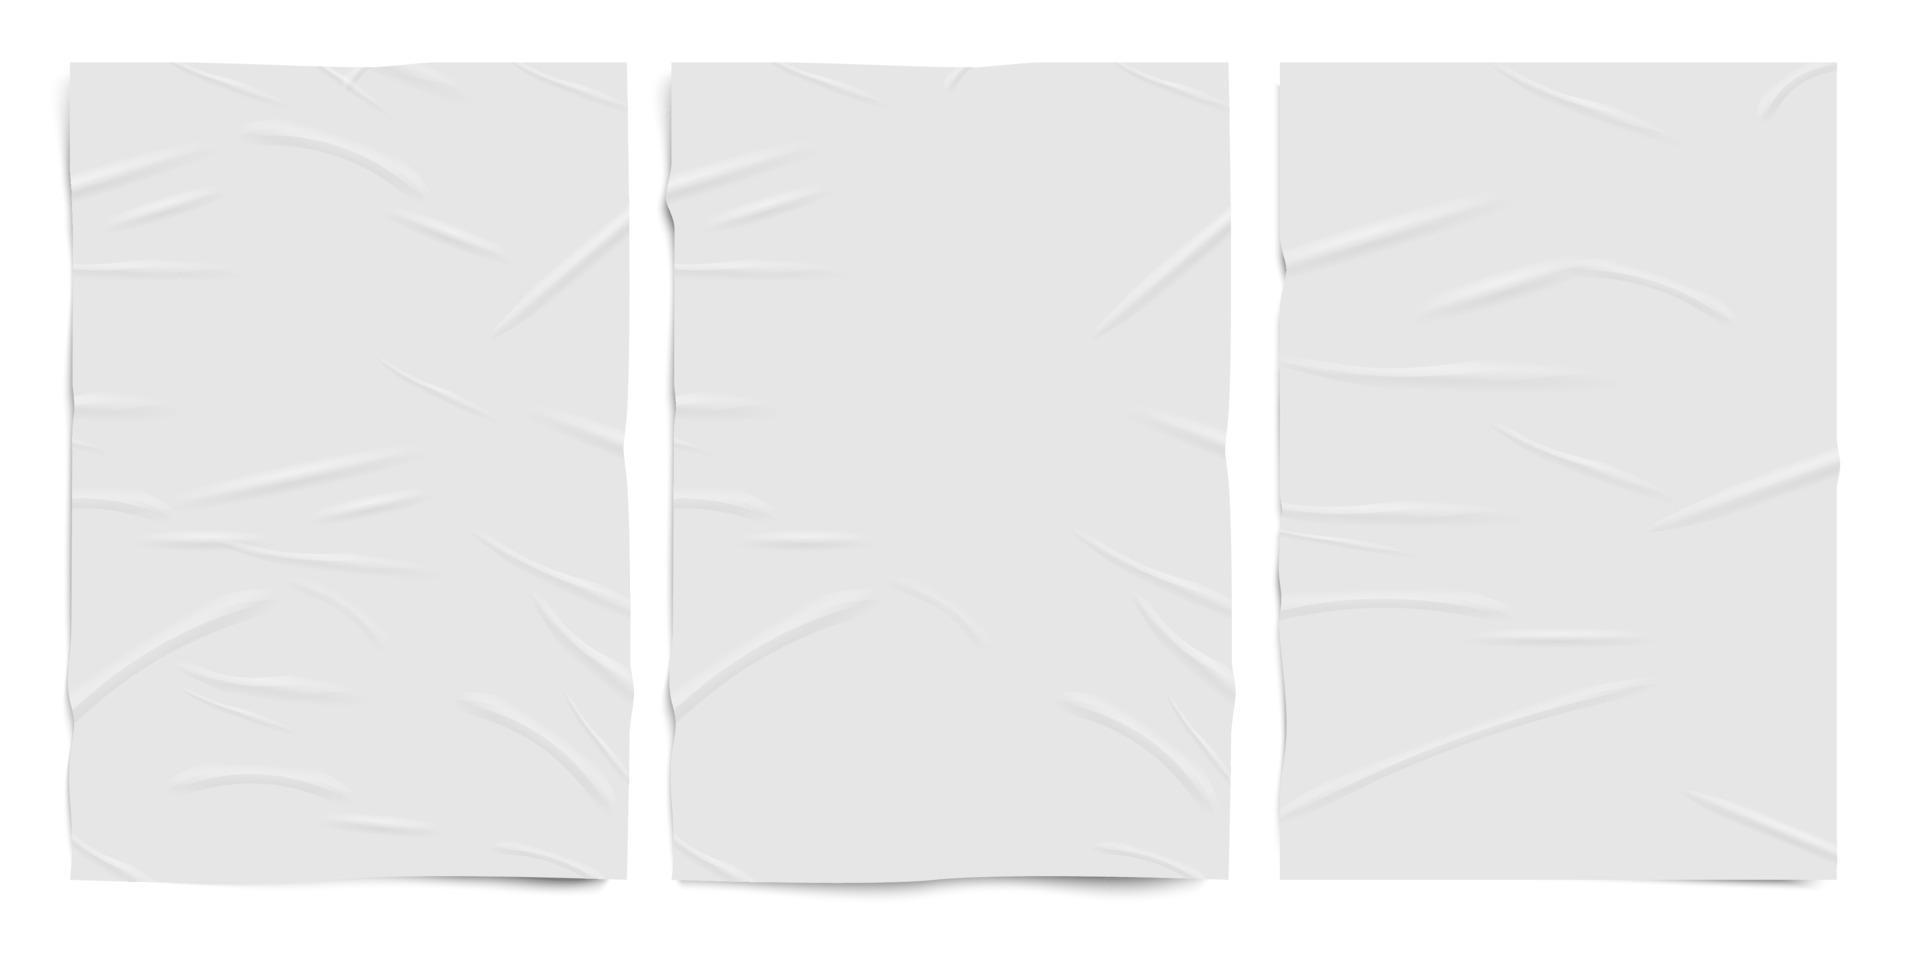 trama di carta bianca mal incollata, fogli di carta effetto stropicciato bagnato, set realistico vettoriale